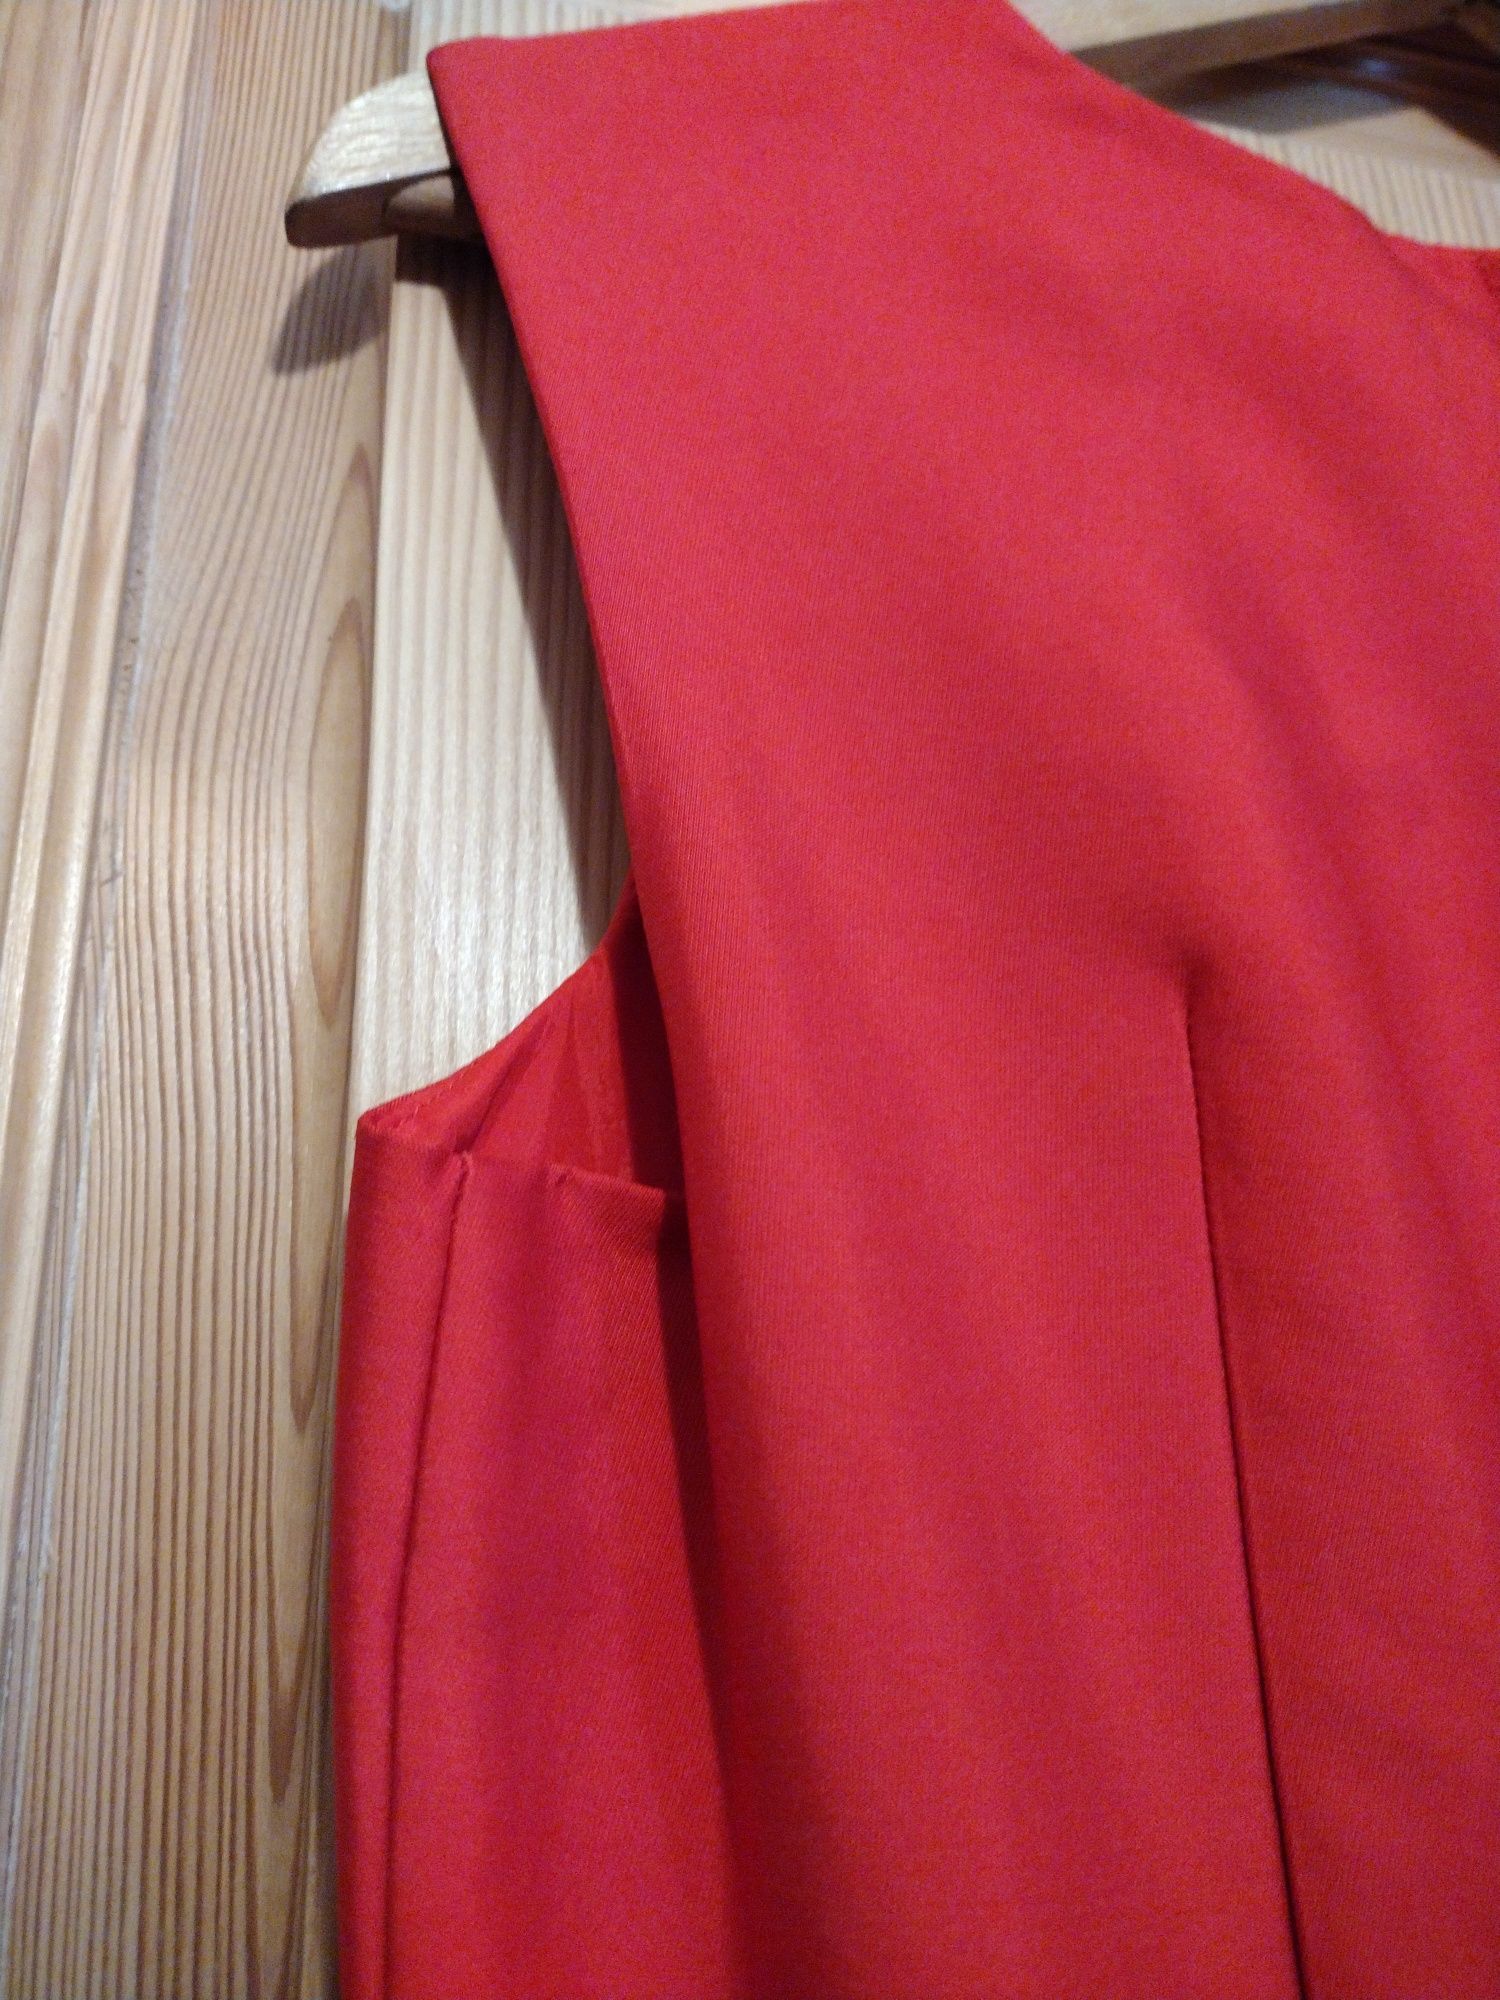 Elegancka czerwona sukienka Orsay rozmiar 36 raz założona